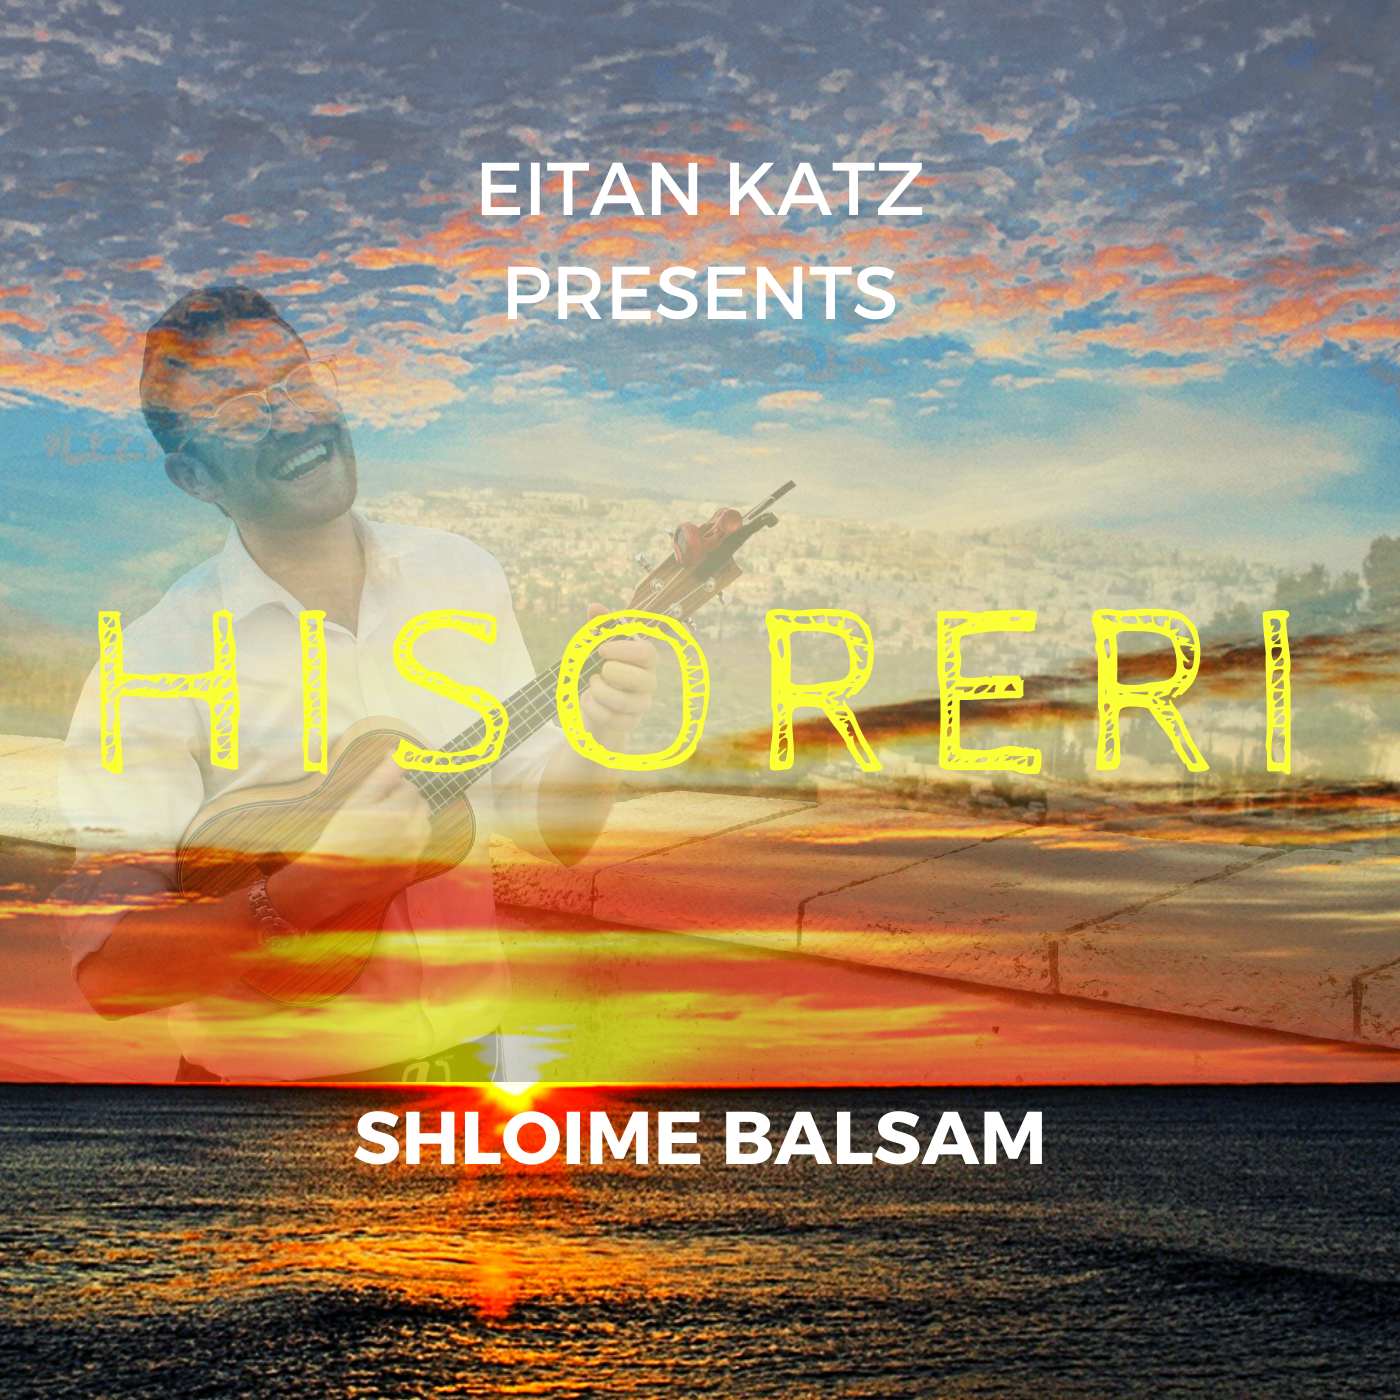 Eitan Katz - Shloime Balsam - Hisoreri (Single)